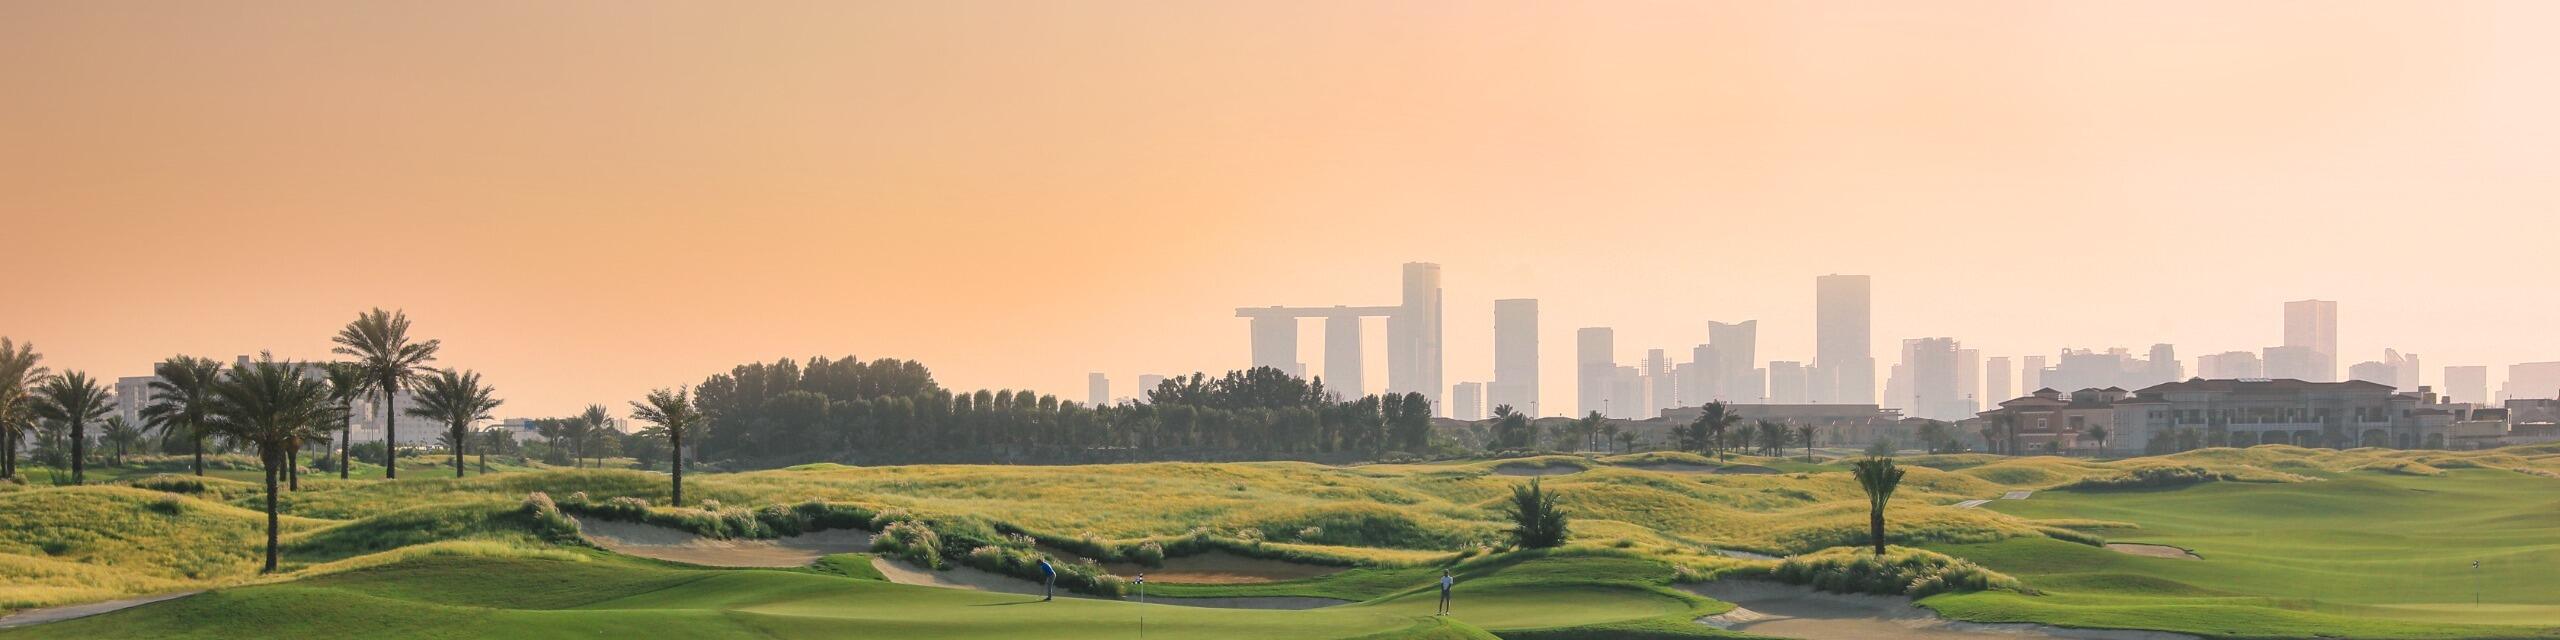 Abu Dhabi | Hotel Royal M - Tausendundeine Pracht |  Golfen & Erleben 